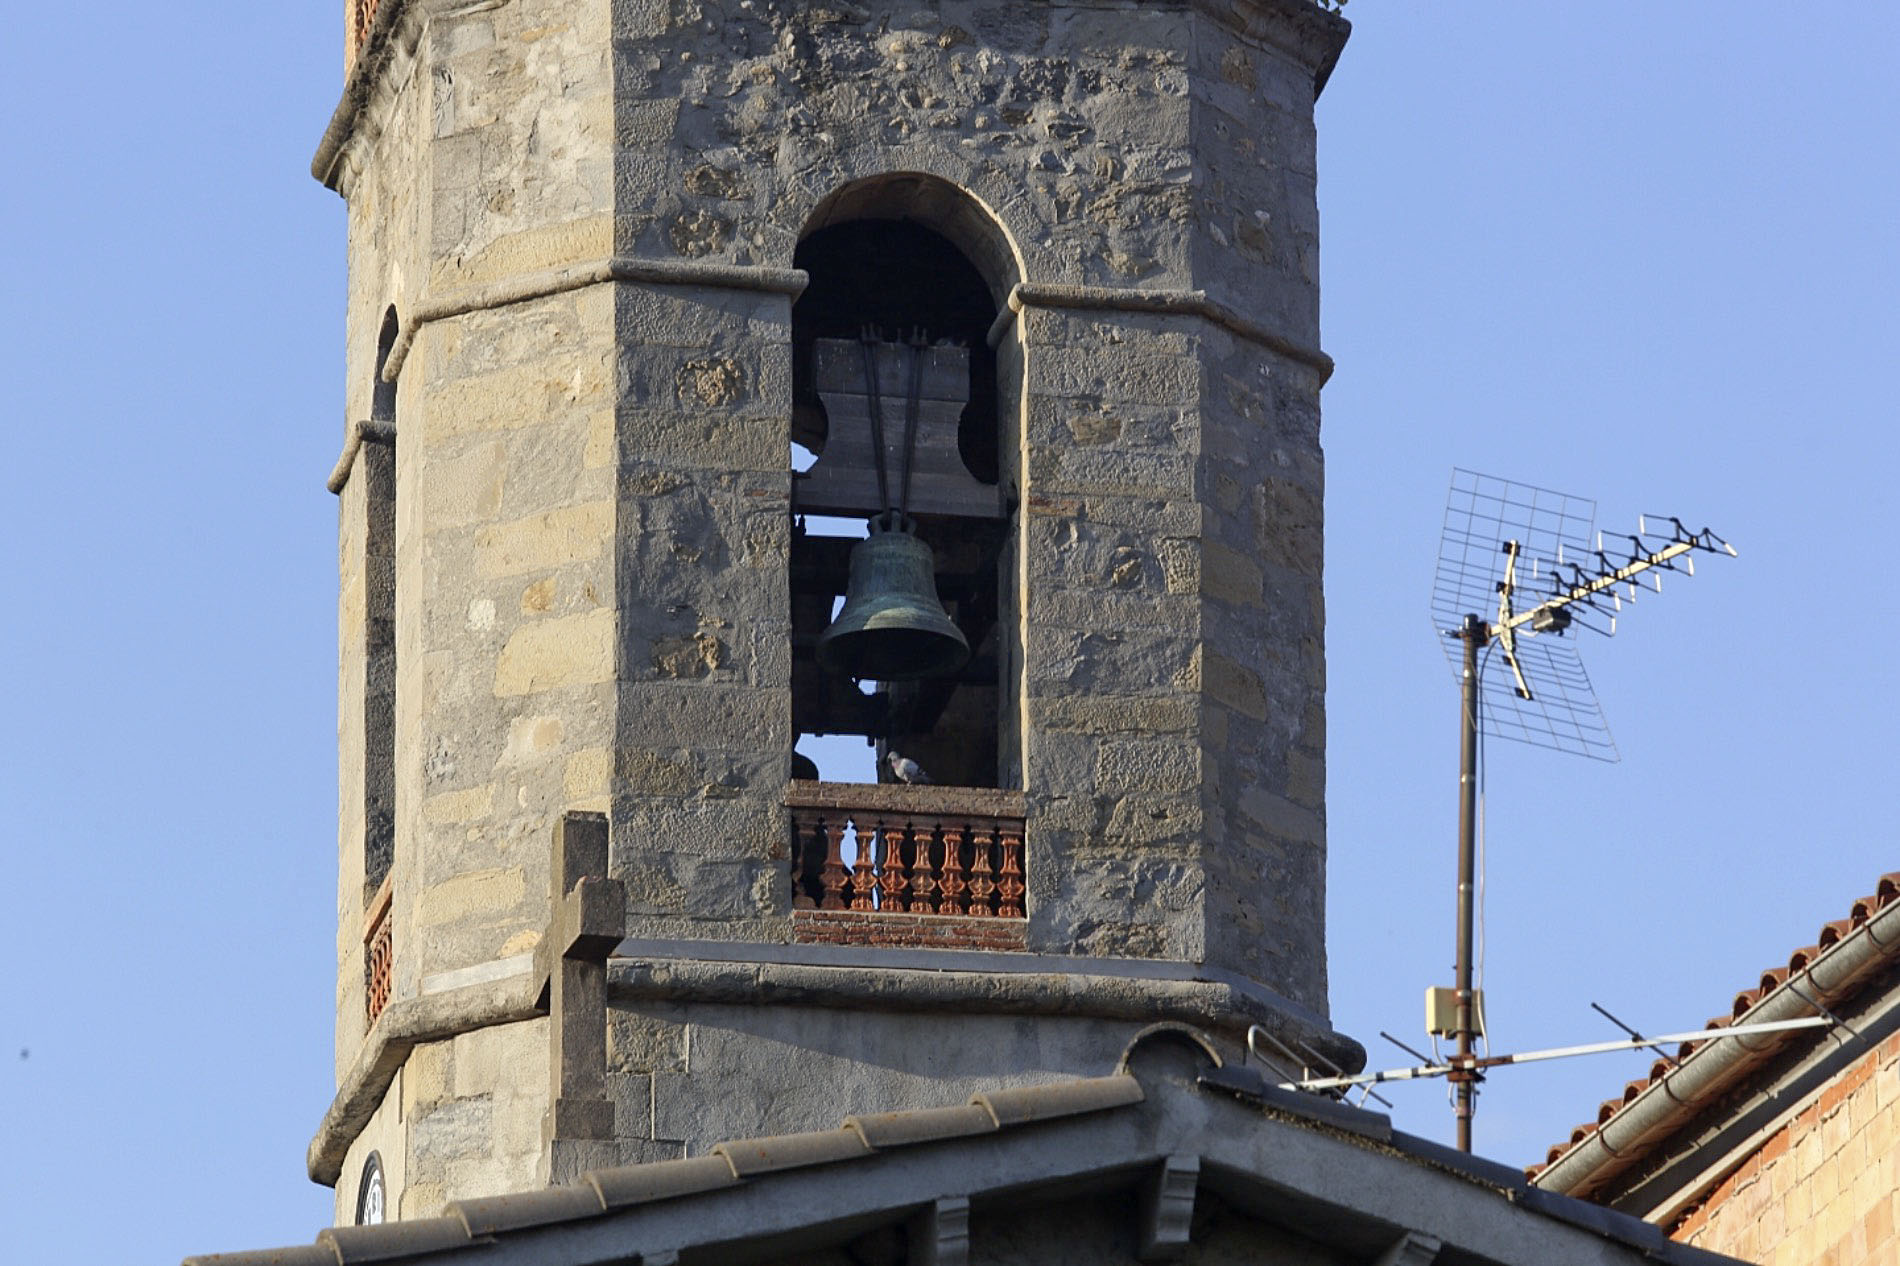 La setmana passada van continuar els treballs al campanar de Montesquiu per reduir el so de les campanes